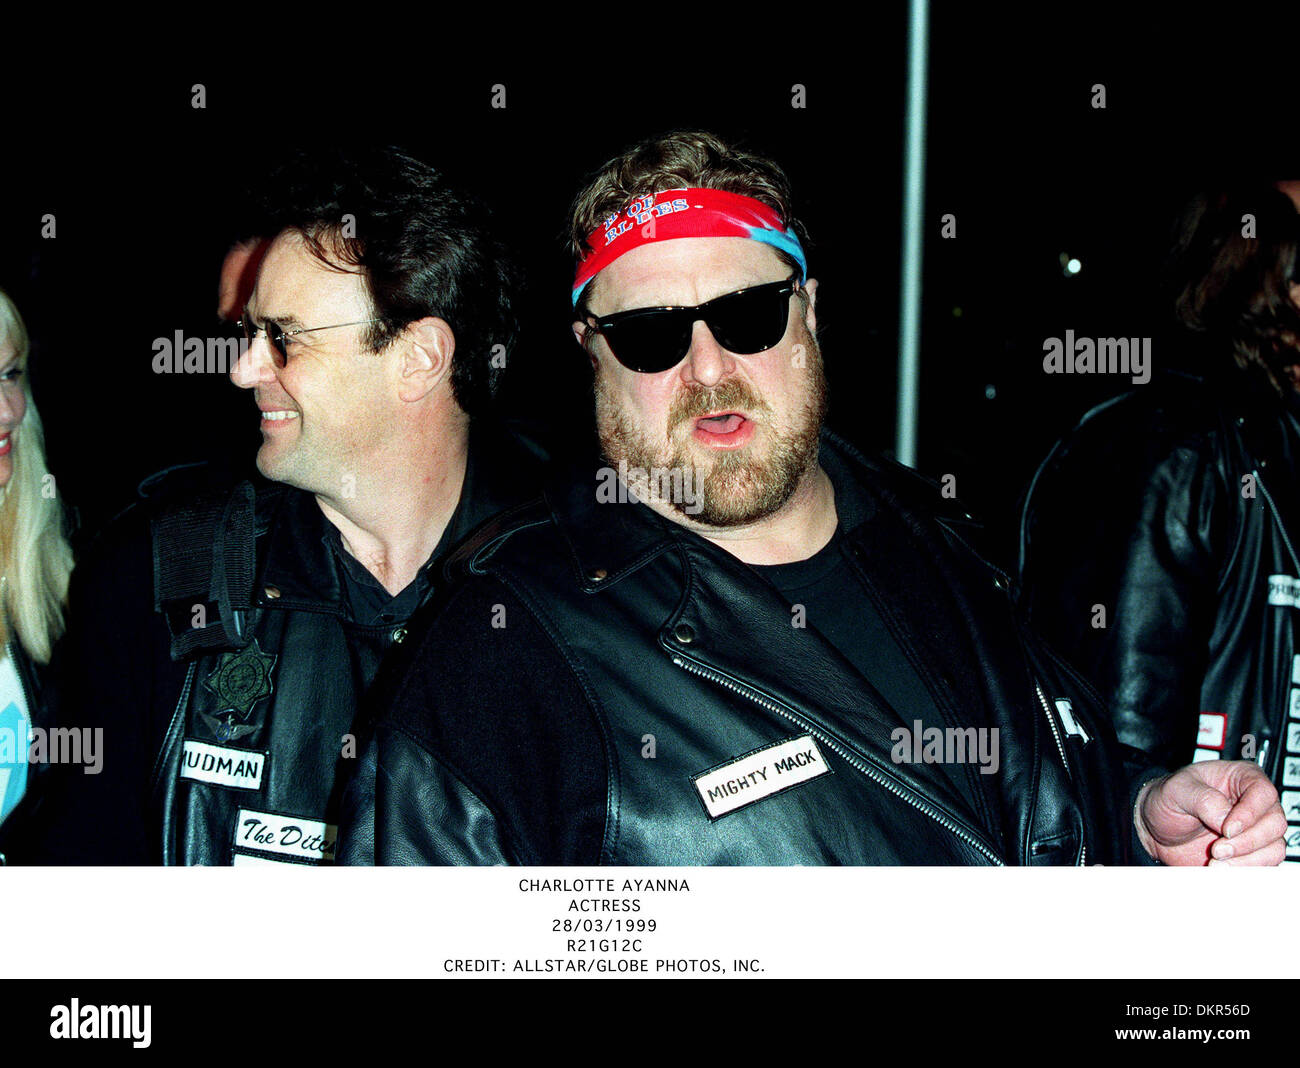 DAN AYKROYD & JOHN GOODMAN.BLUES BROTHERS 2000.17/02/1998.M43A9C. Stock Photo